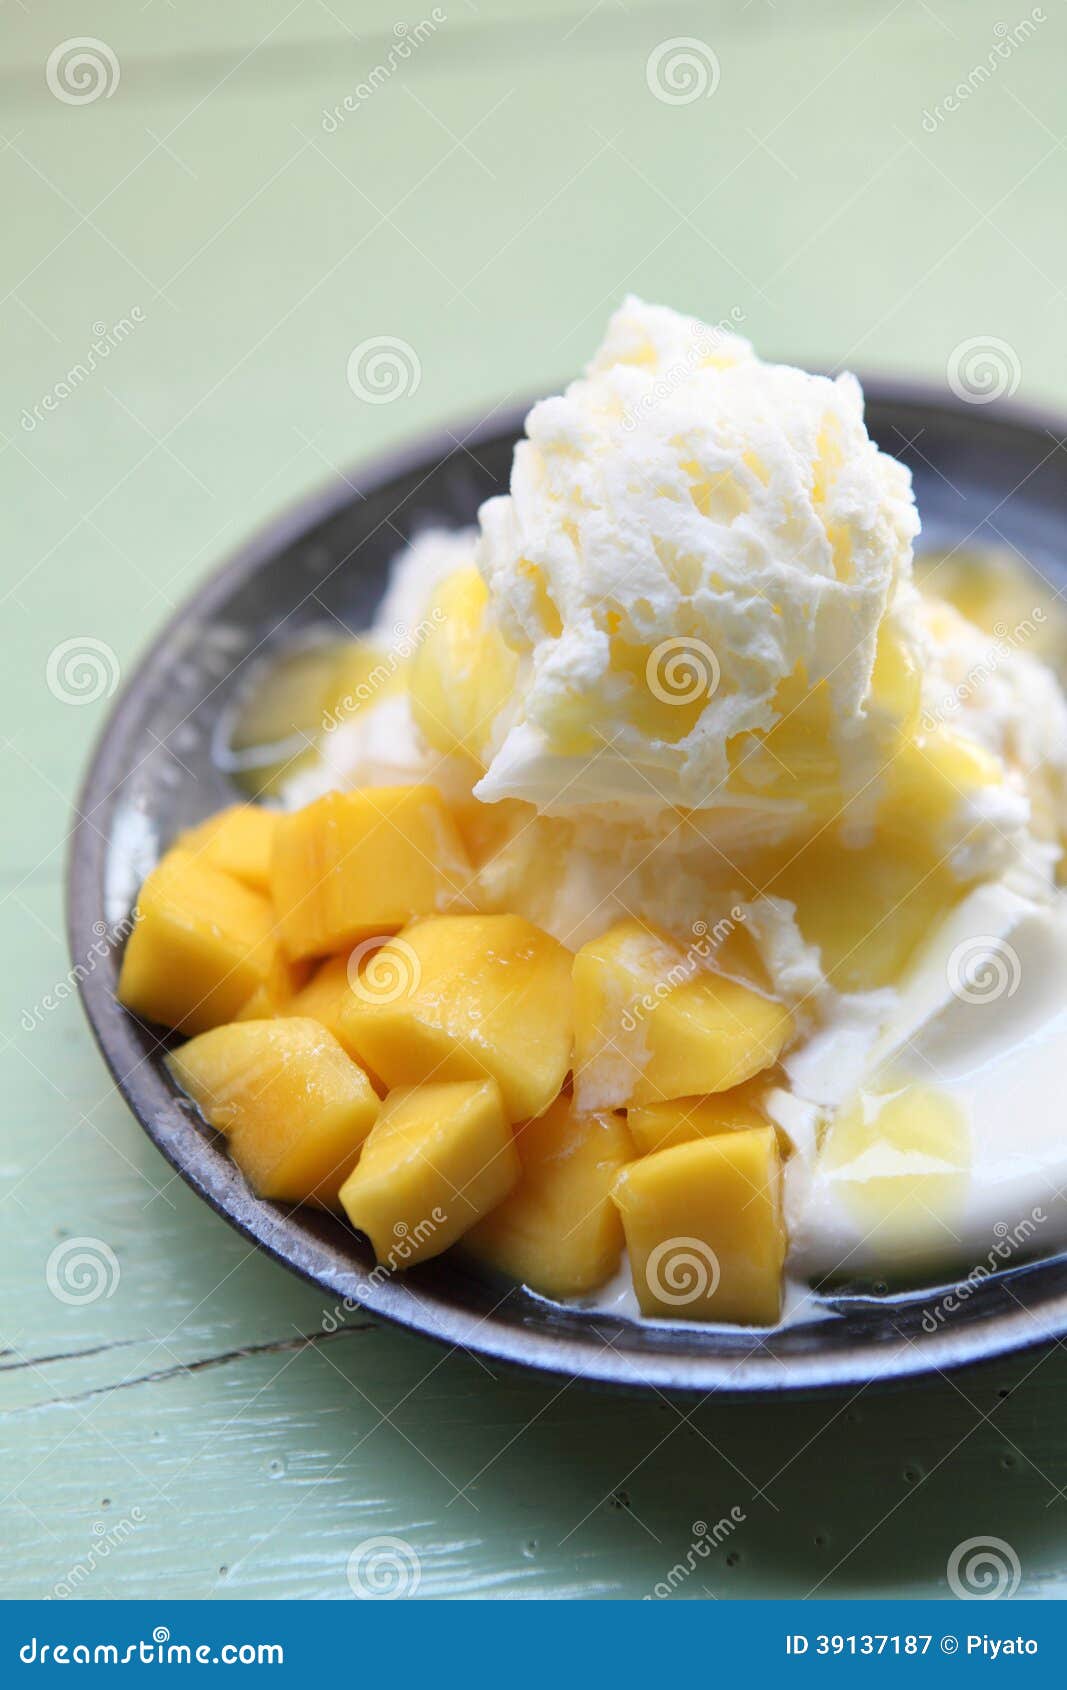 Shaved Ice Dessert with Fresh Mango Stock Image - Image of fresh, white ...